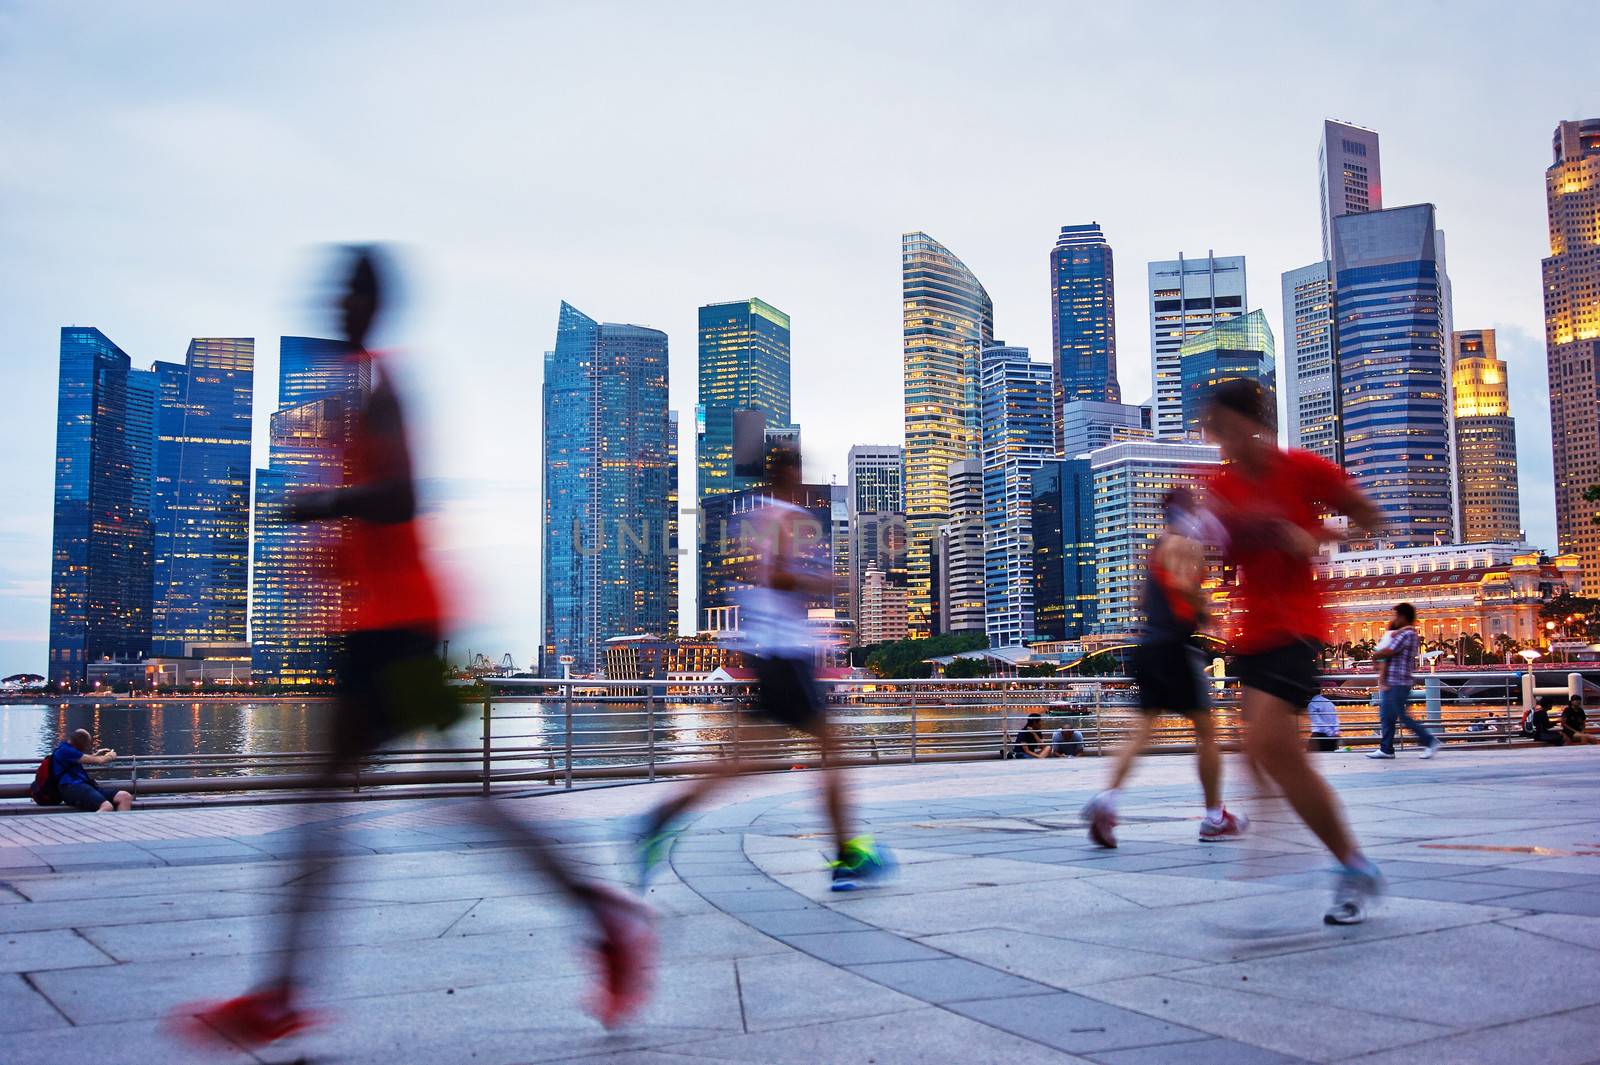 Running Singapore by joyfull